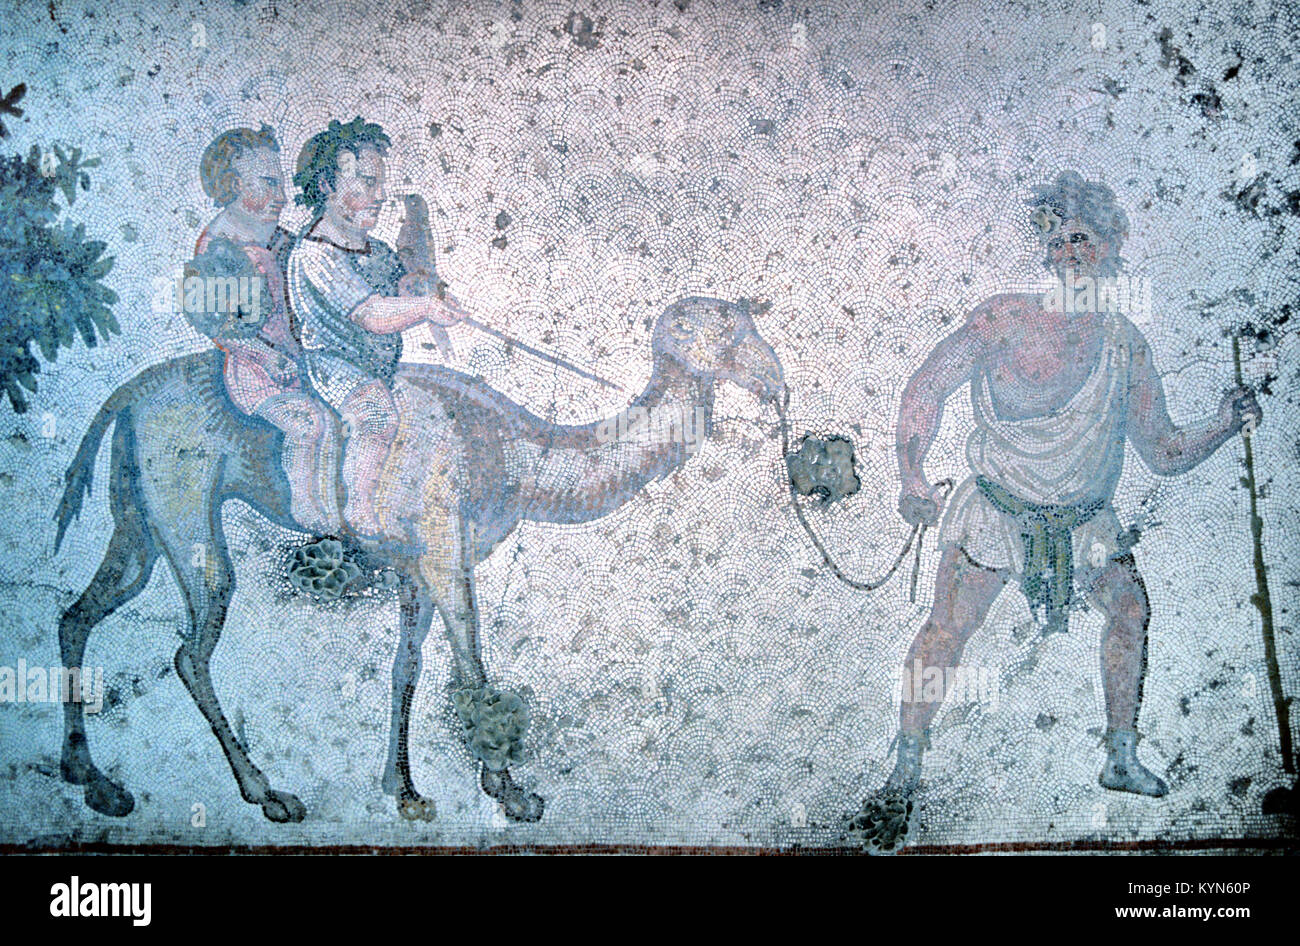 Pavimento bizantino mosaico di giovani ragazzi a cavallo di un dromedario o cammello e Cameleer dal grande Palazzo di Bisanzio, Istanbul, Turchia Foto Stock